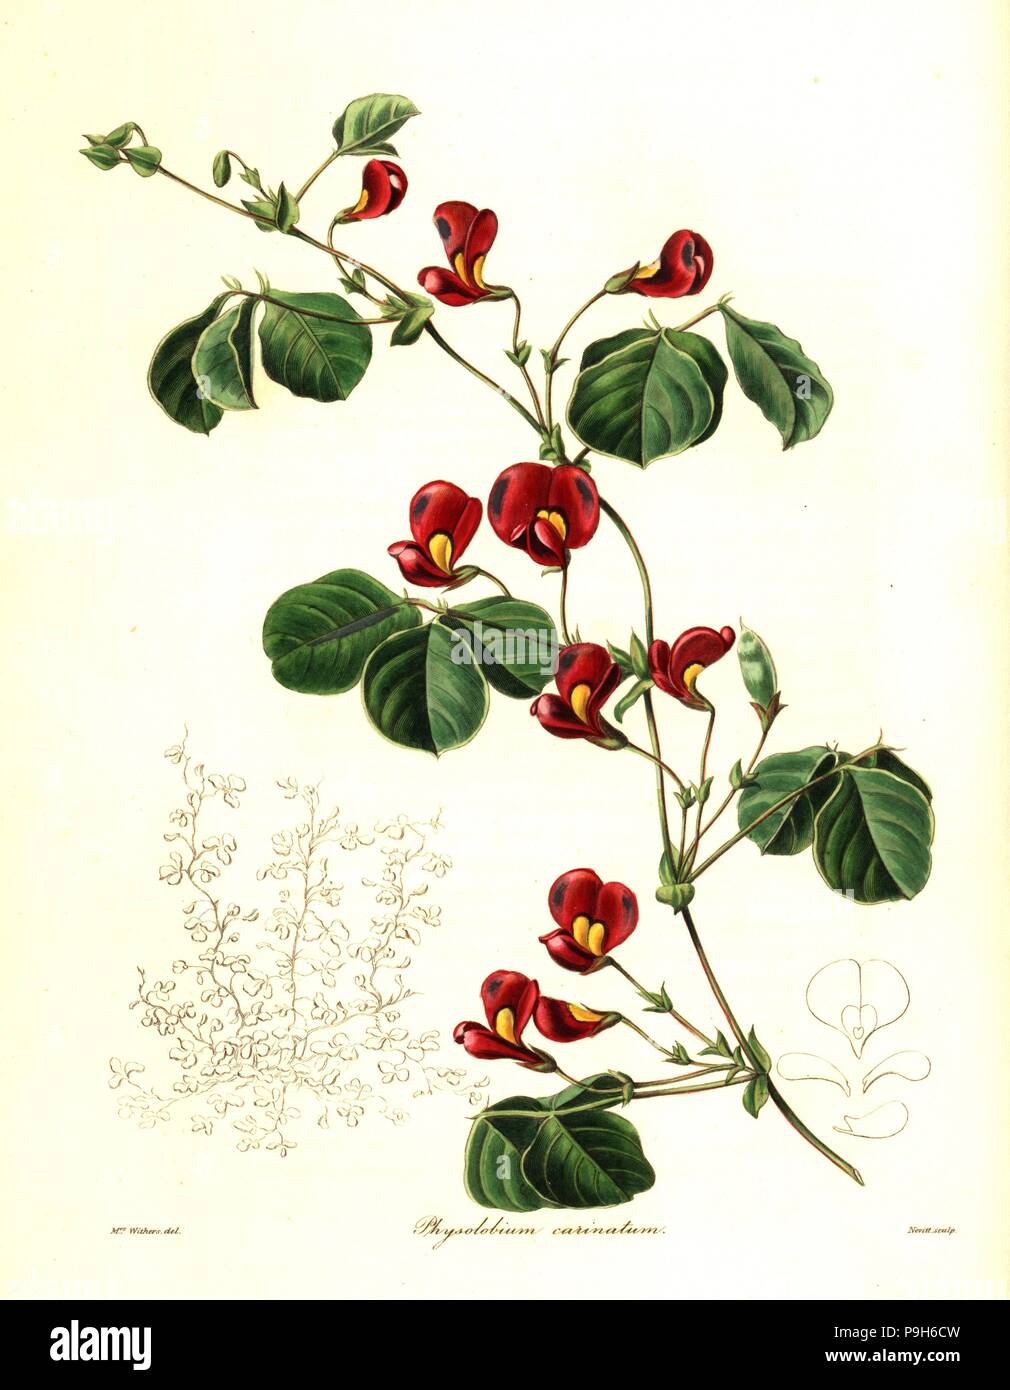 Kennedia carinata (Large-keeled physolobium, Physolobium carinatum ...